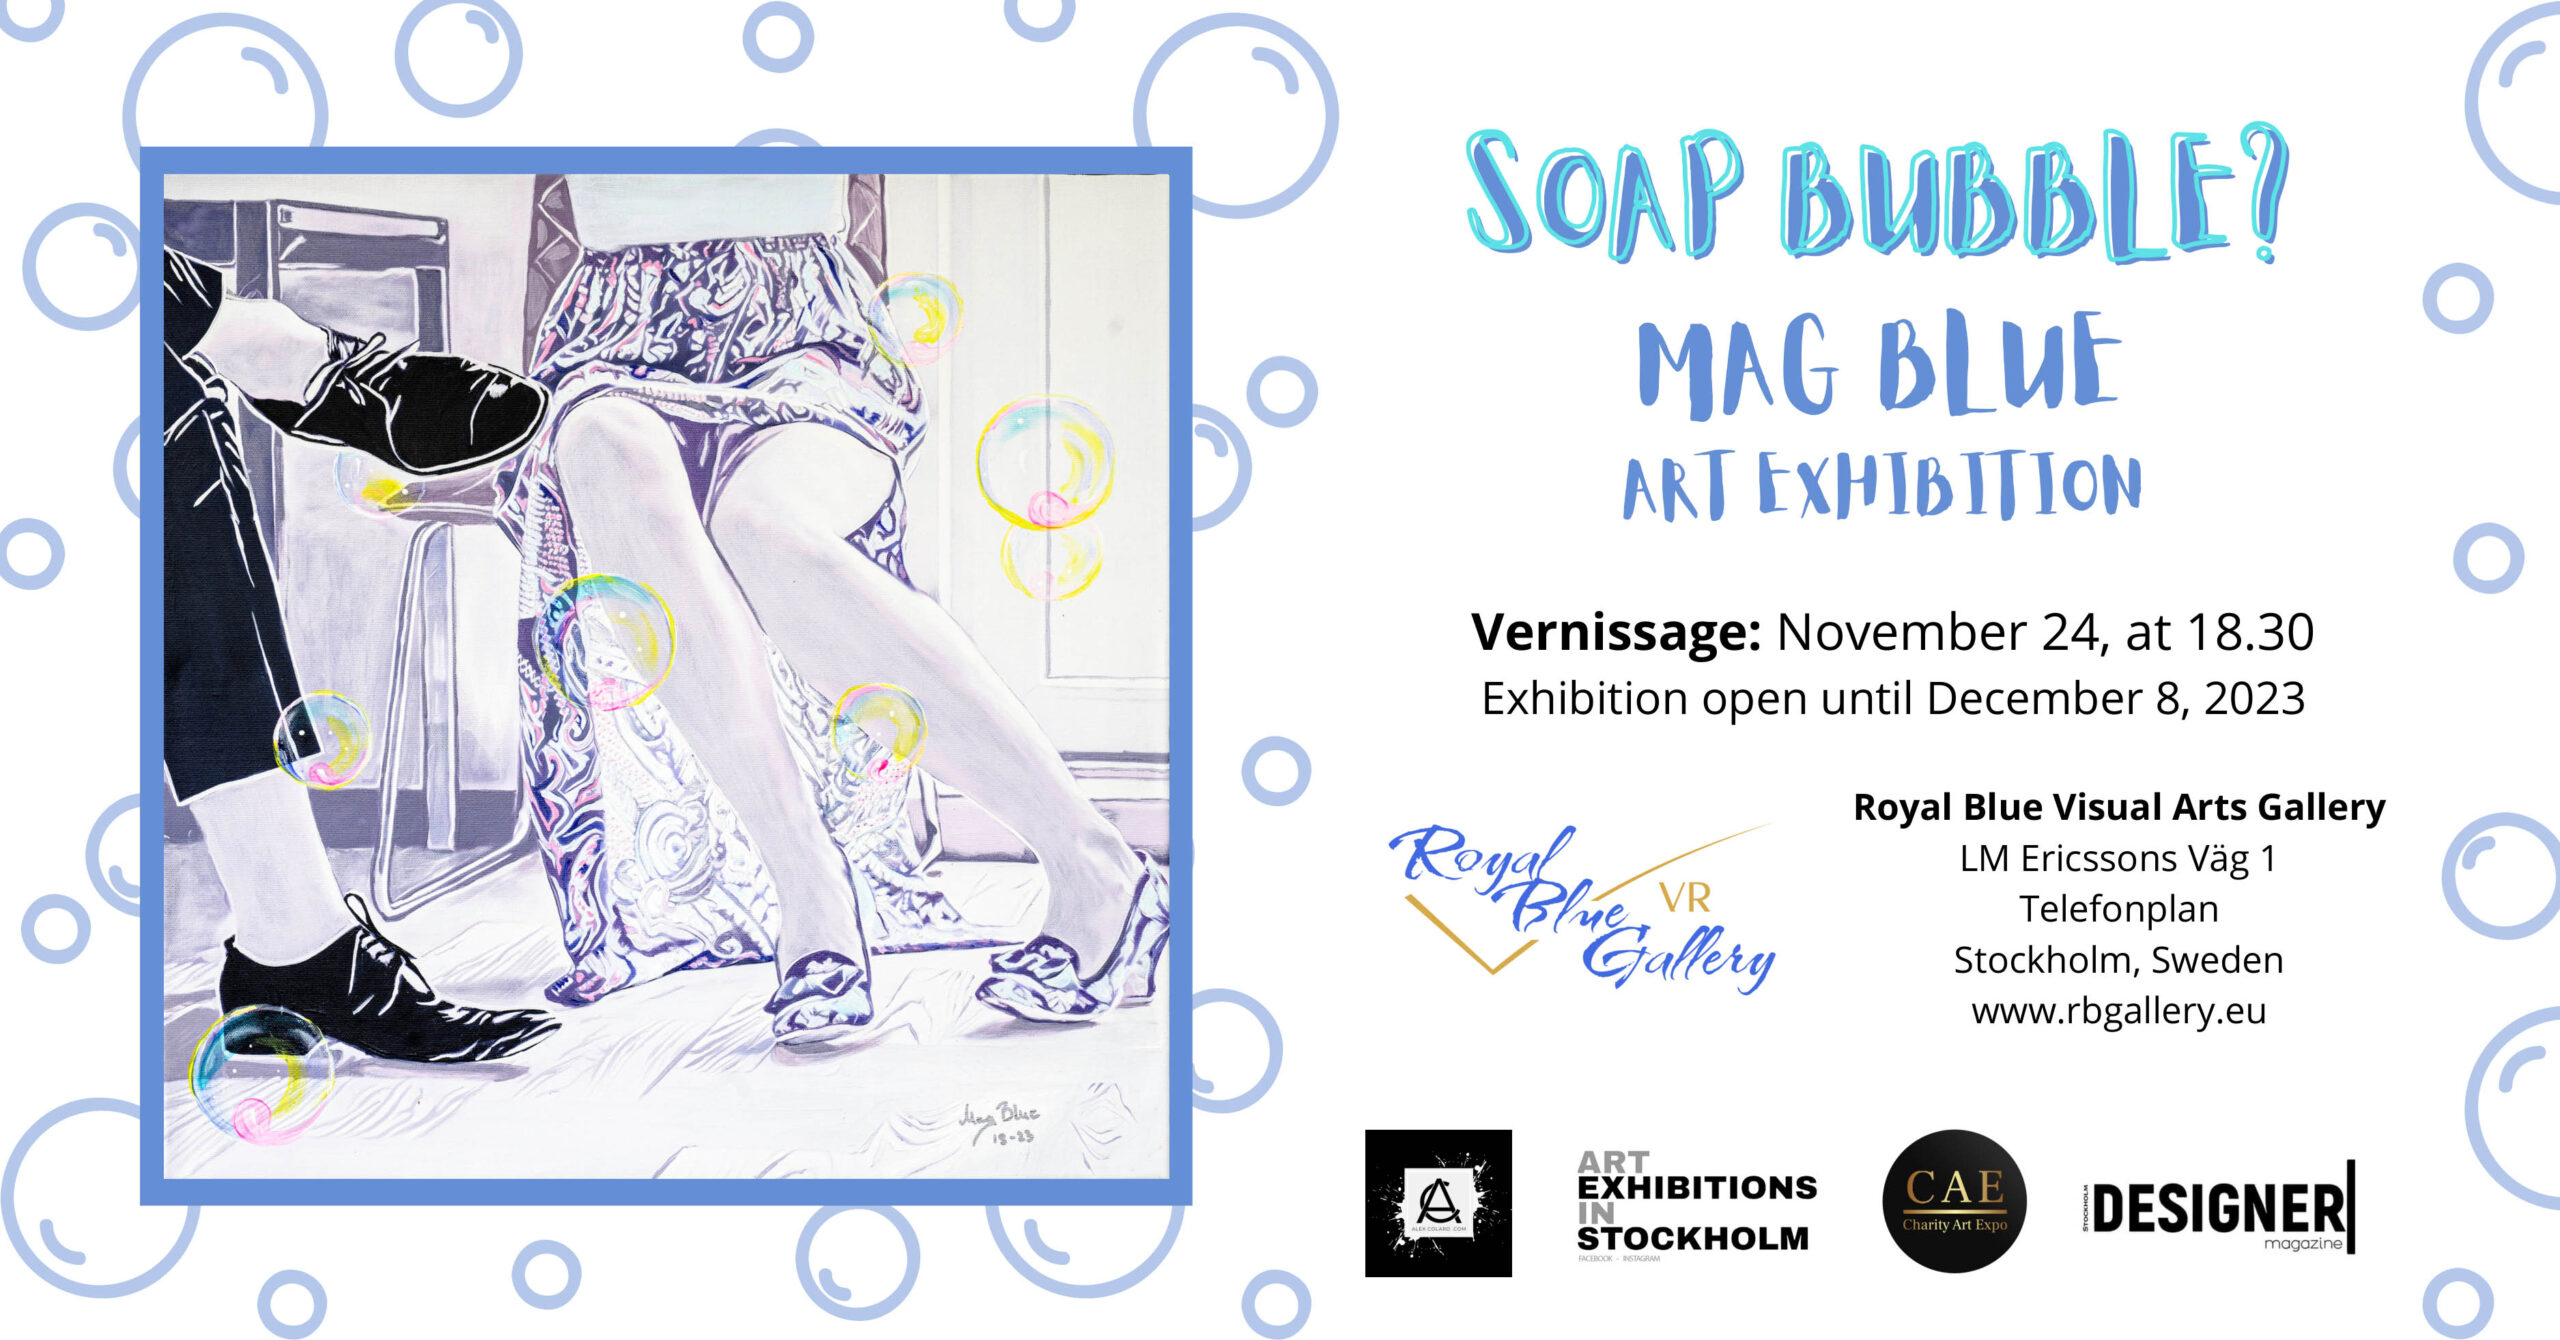 Soap bubbles – Mag Blue art exhibition